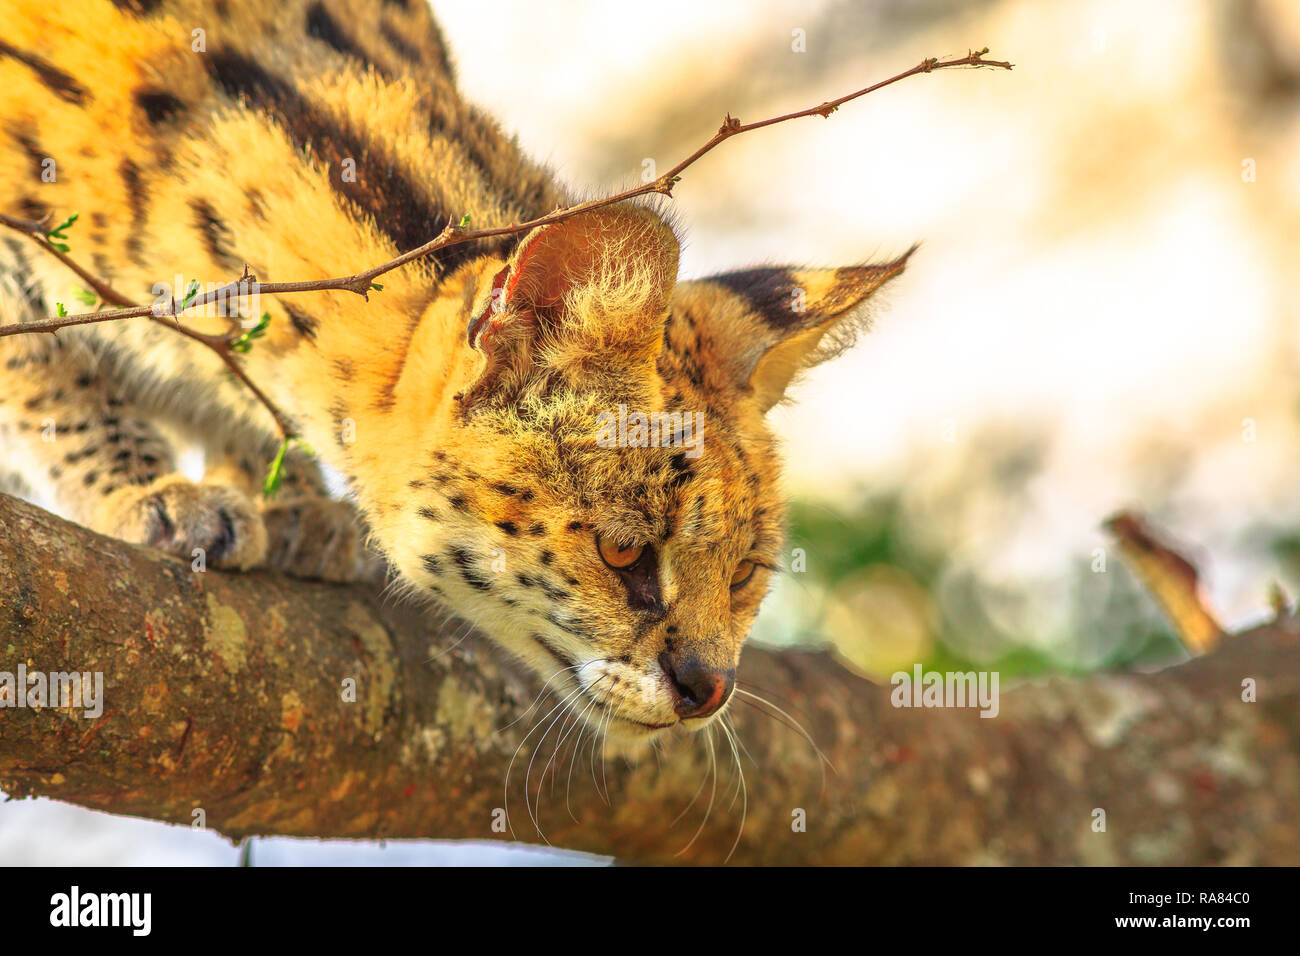 Ritratto di Serval su un albero in habitat naturale con sfondo sfocato. Il nome scientifico è Leptailurus serval. Il Serval è un macchiato il gatto selvatico nativa per l'Africa. Vista laterale. Foto Stock